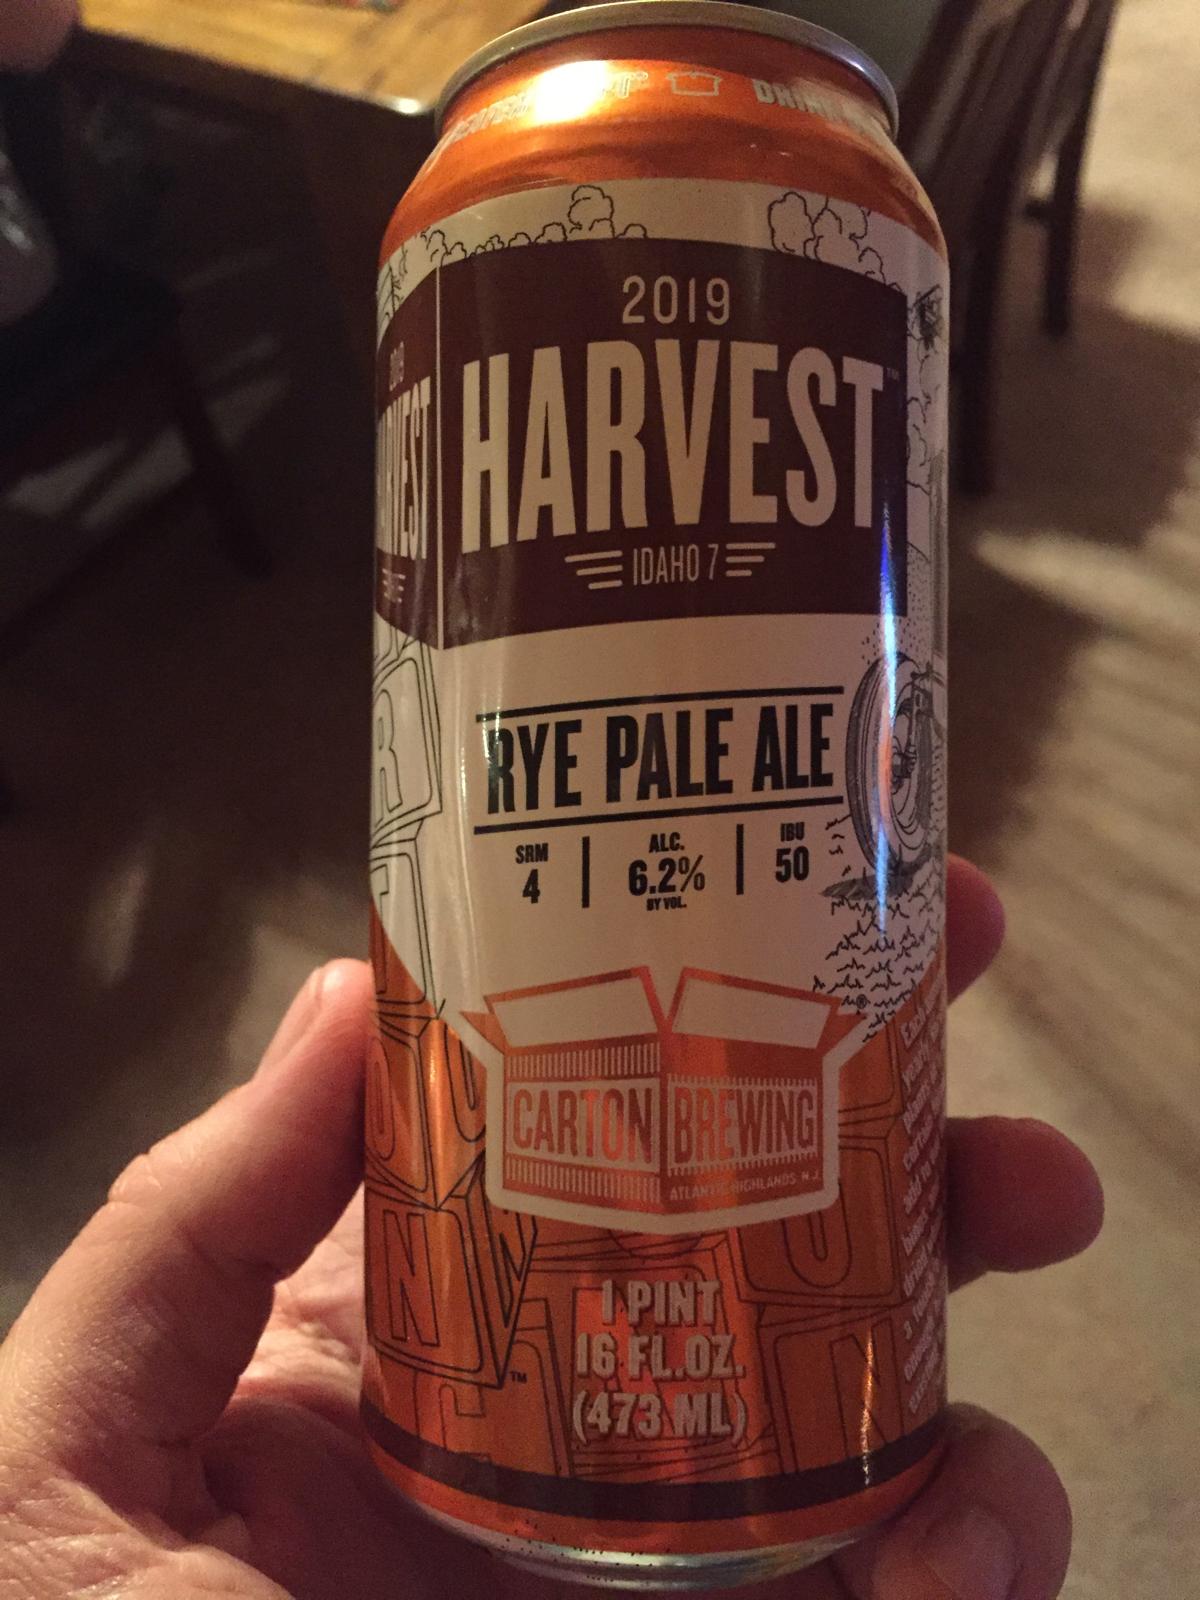 Harvest 2019 - Idaho 7